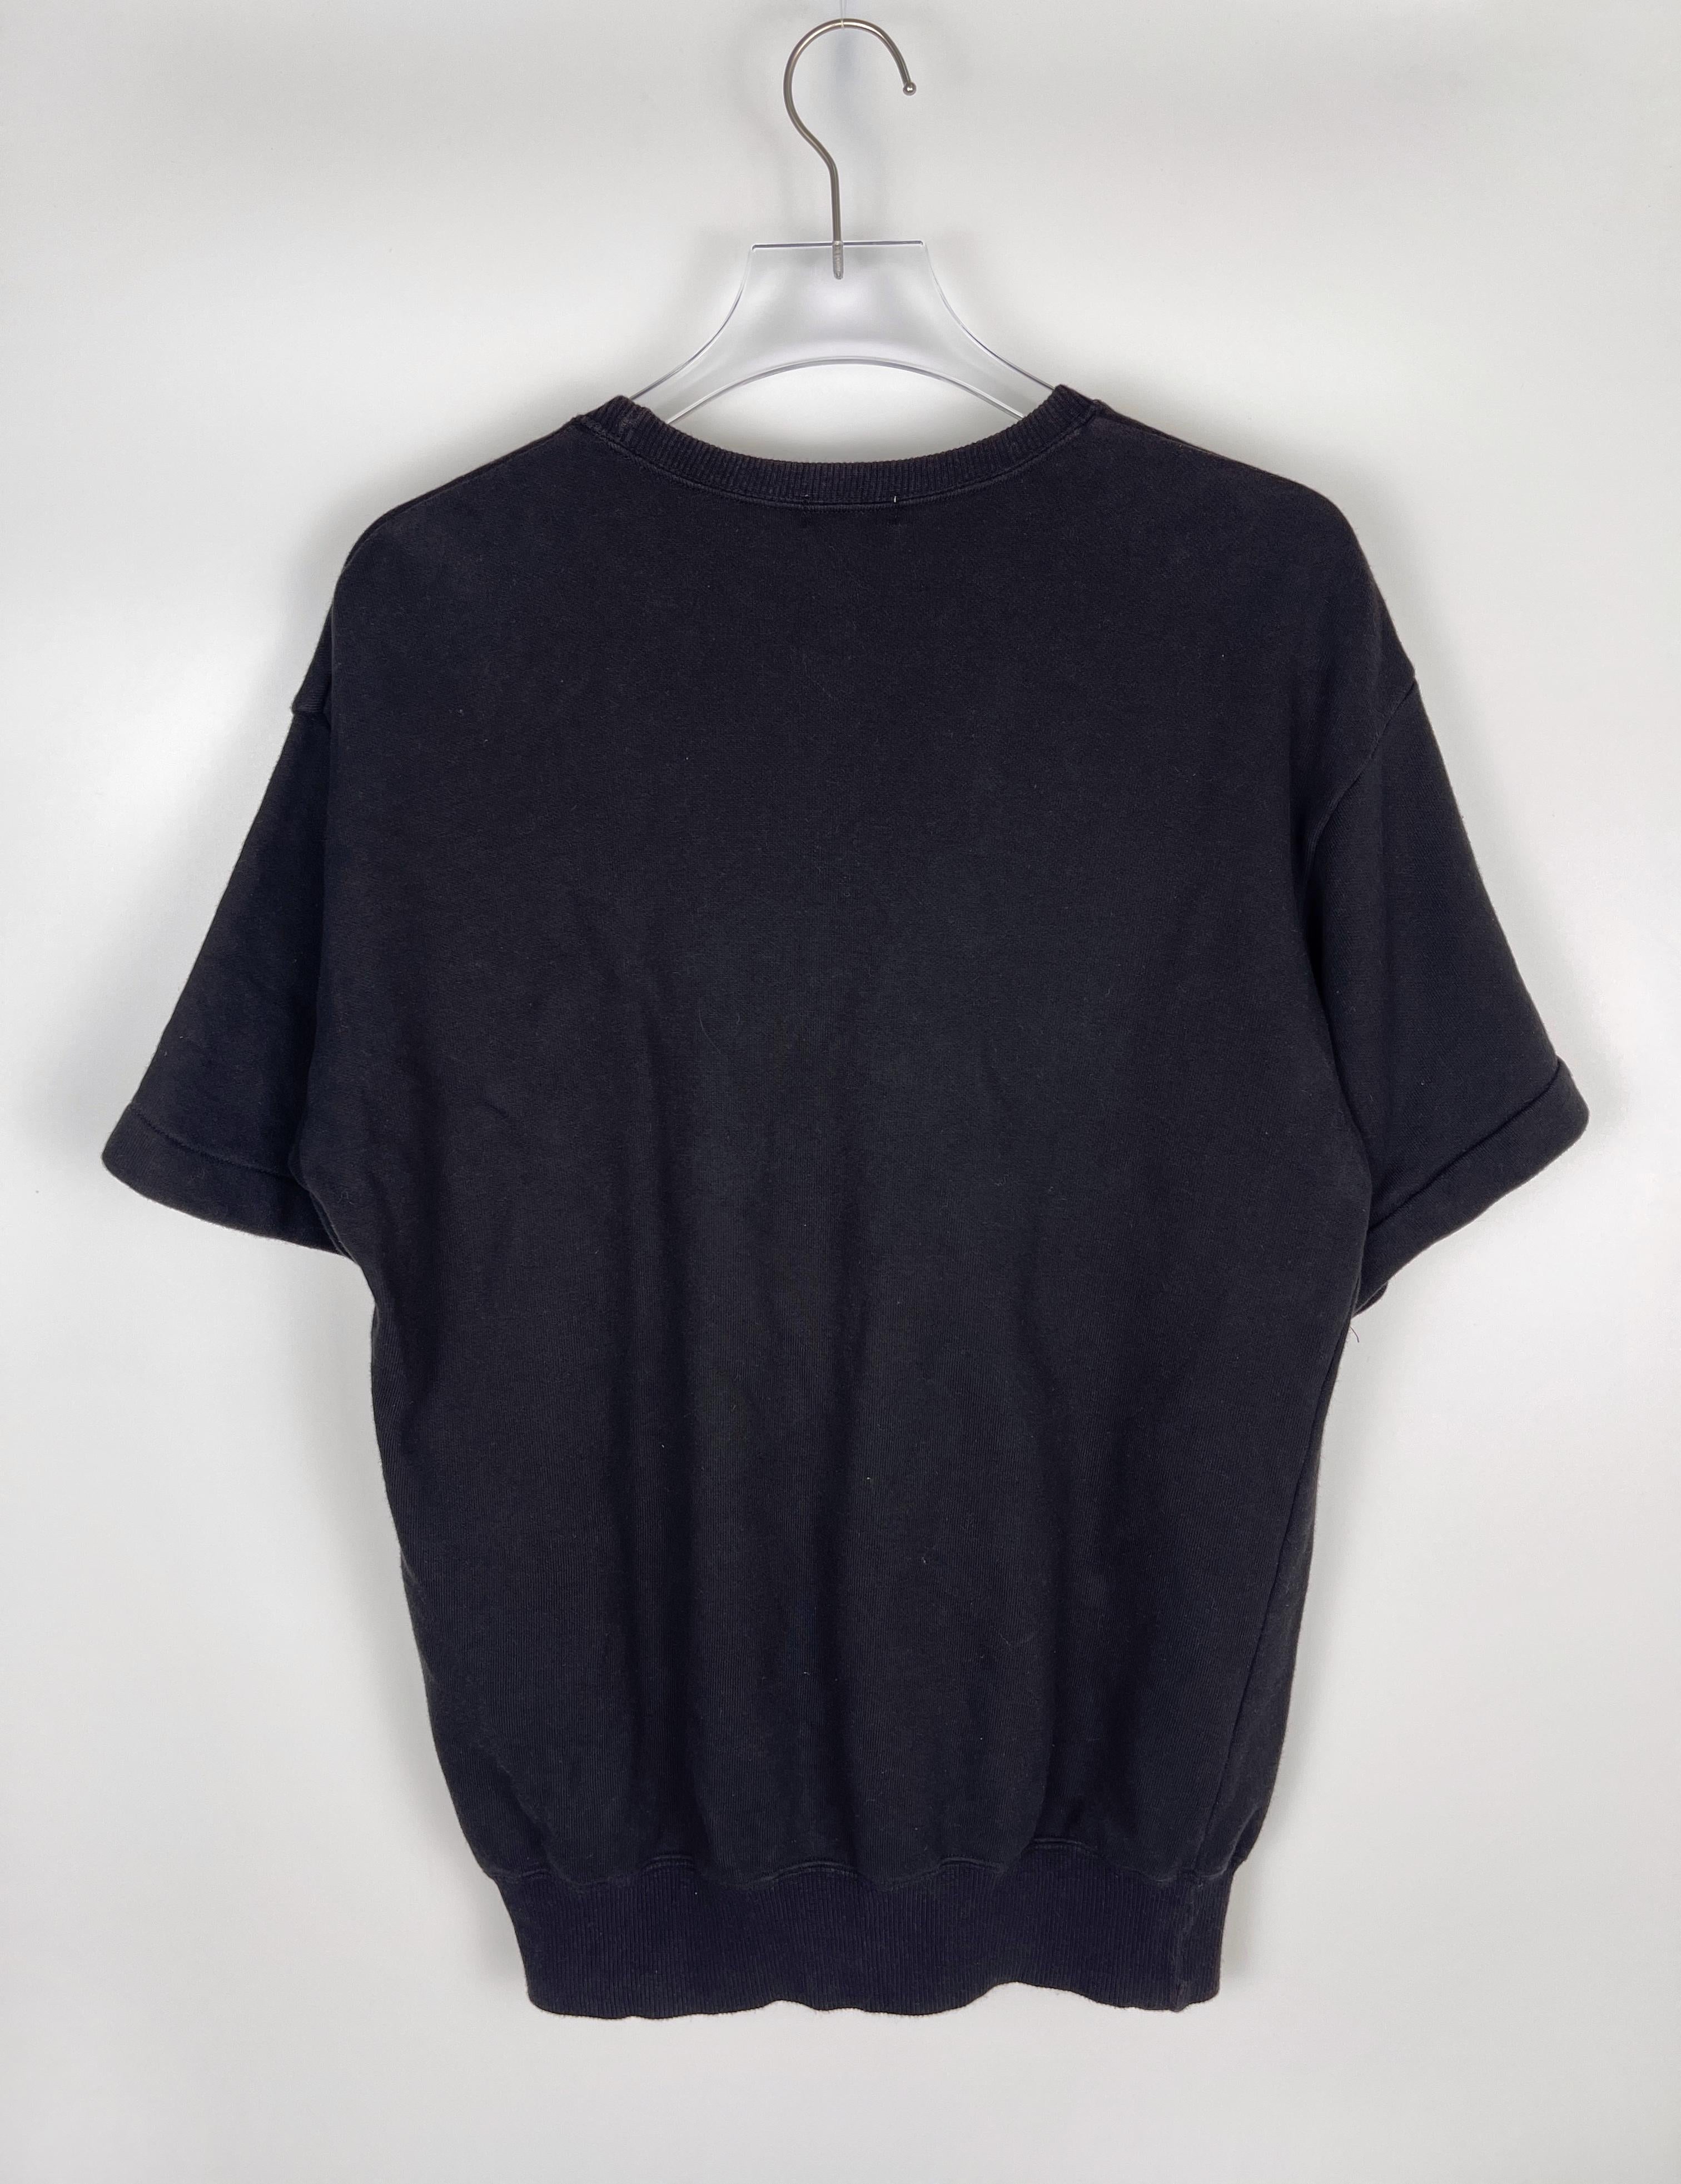 Comme des Garcons HOMME A/W1988 Shield Sweatshirt For Sale 3